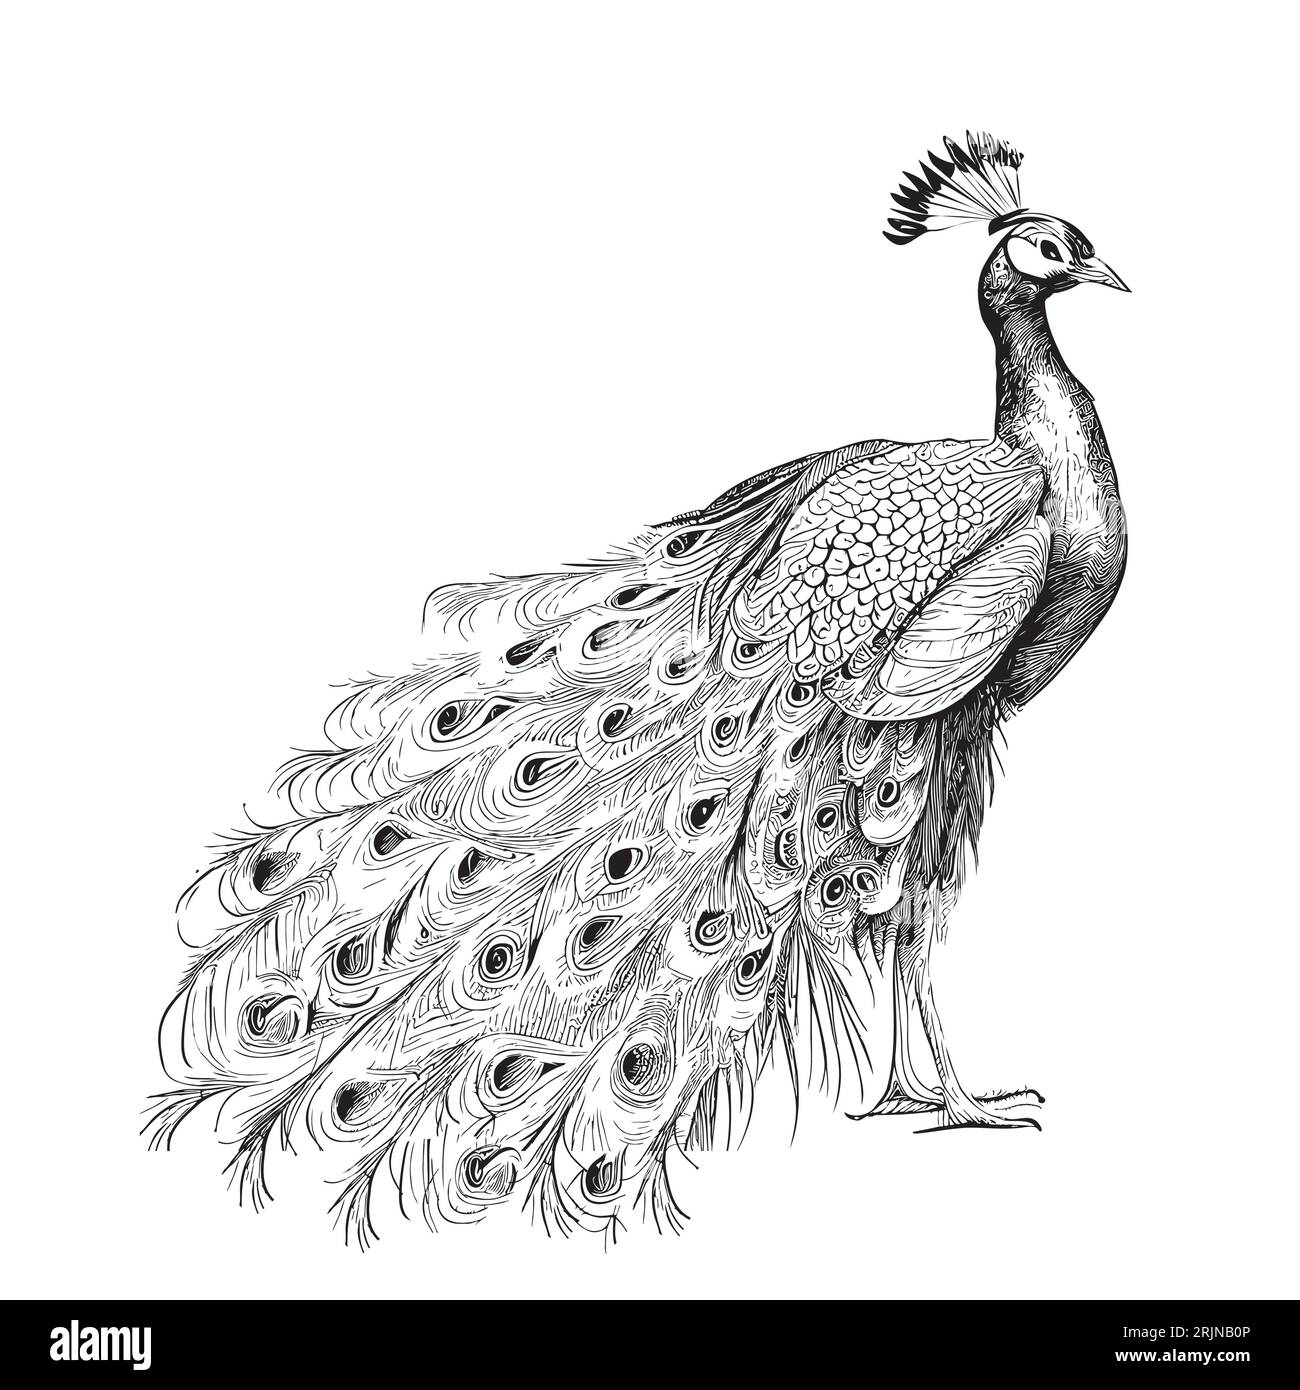 Bellissimo disegno retrò di Peacock Bird disegnato a mano Vector Illustrazione Vettoriale